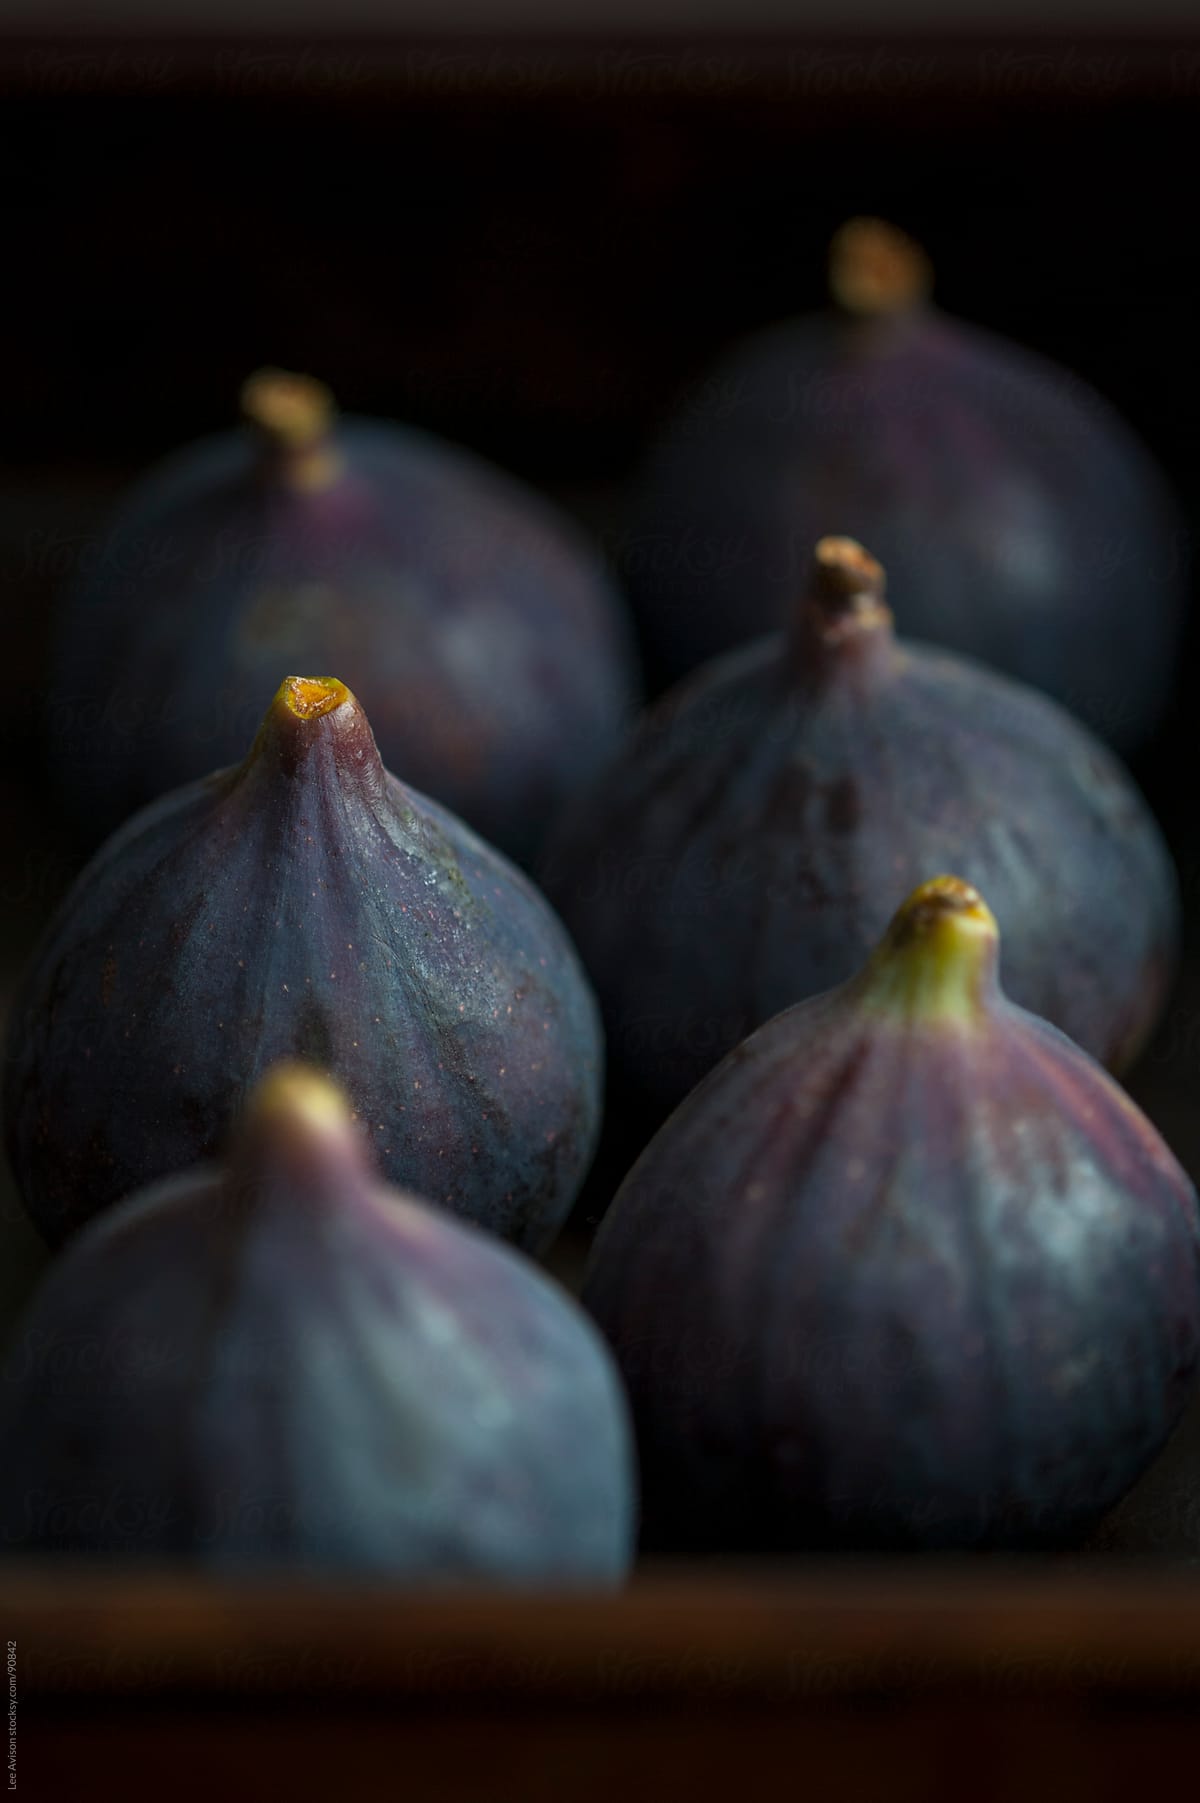 fresh ripe purple figs arranged for baking